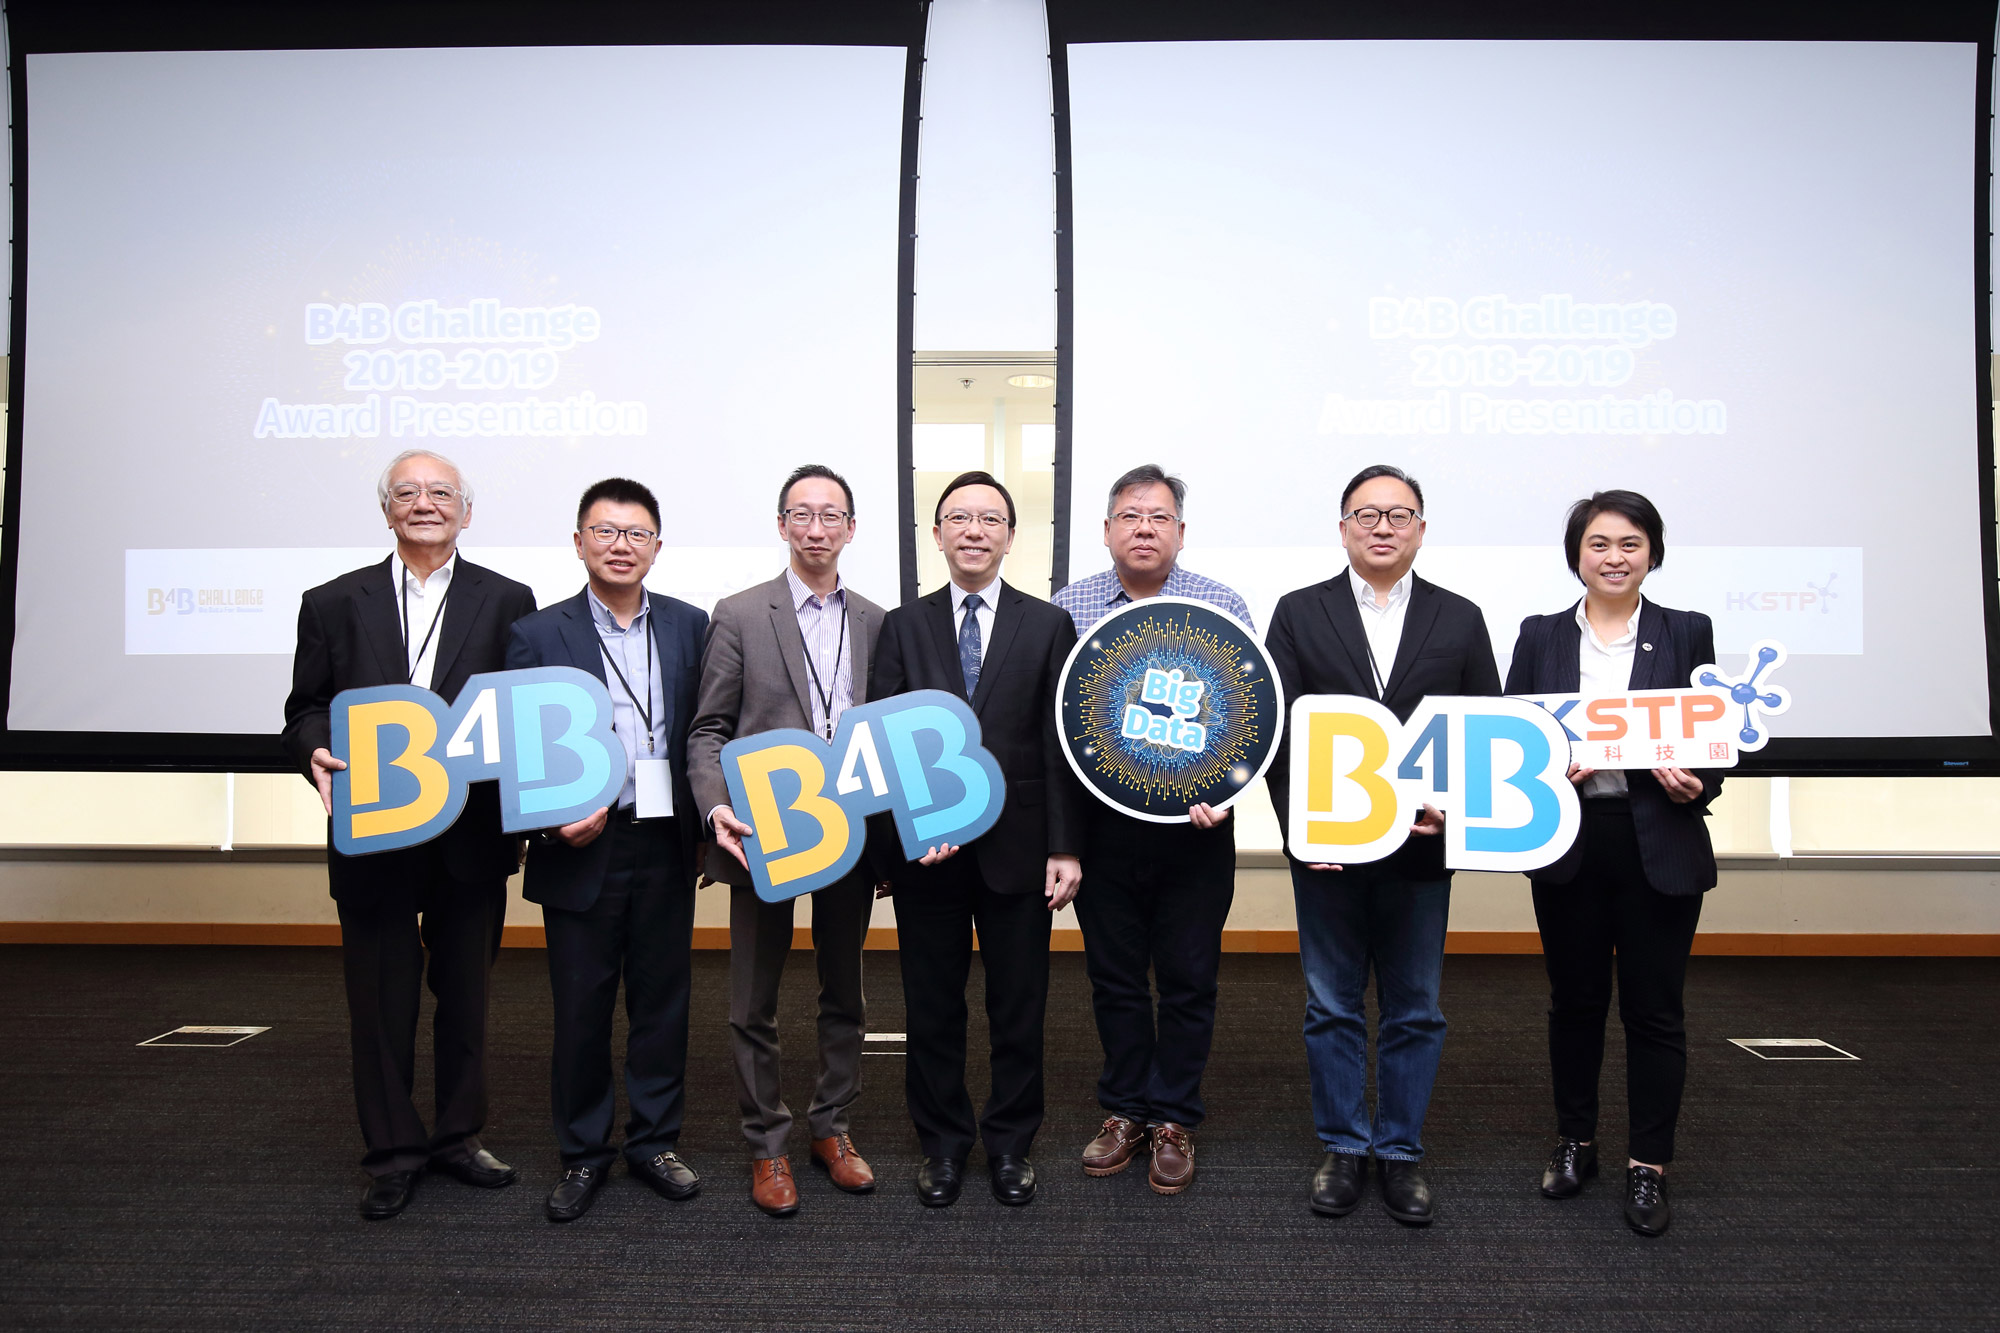 政府資訊科技總監林偉喬先生（中）於「B4B大數據應用挑戰賽」頒獎典禮與嘉賓合照